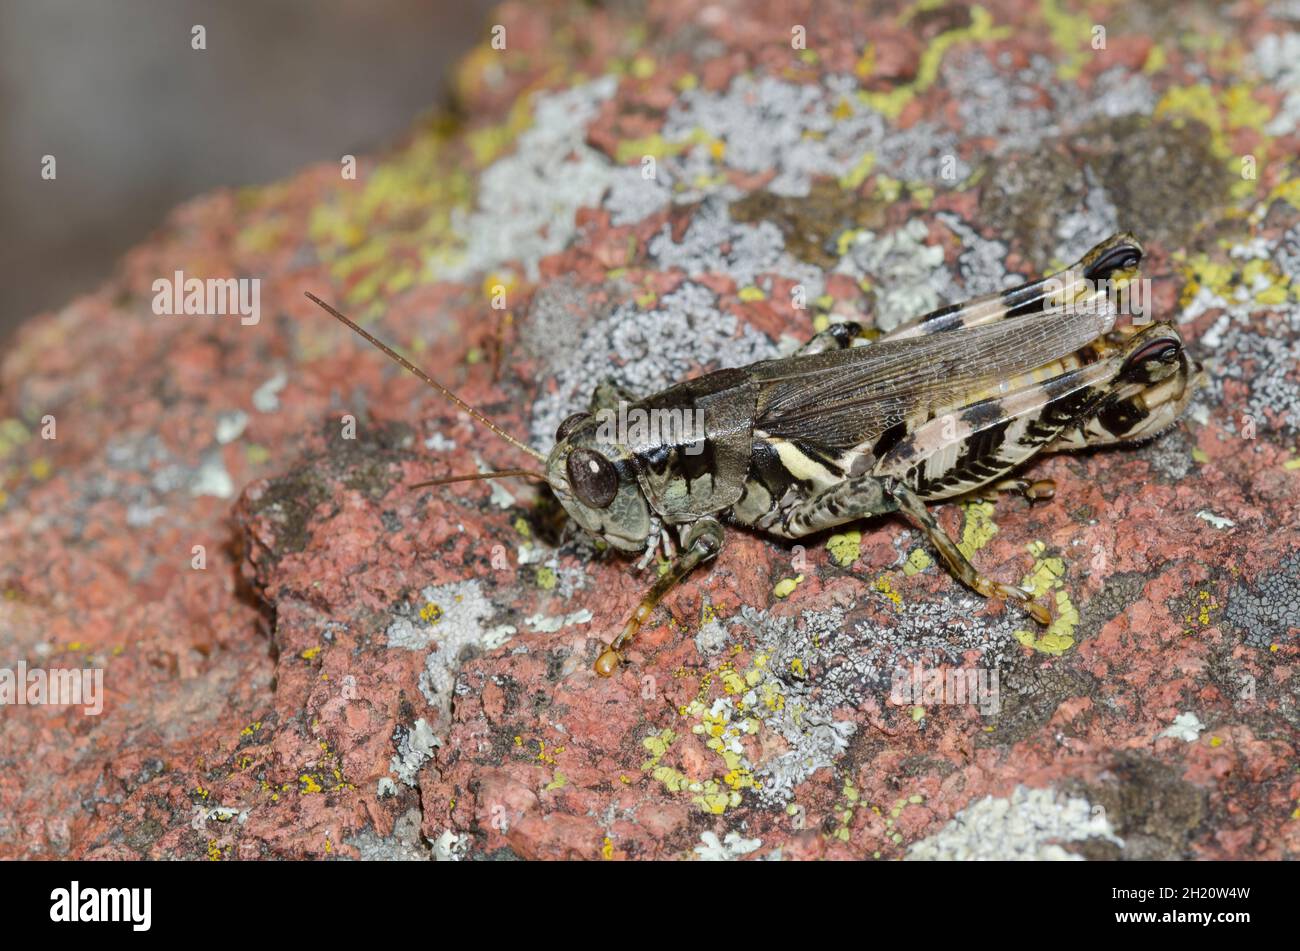 Spur-throated Grasshopper, Melanoplus sp. Stock Photo